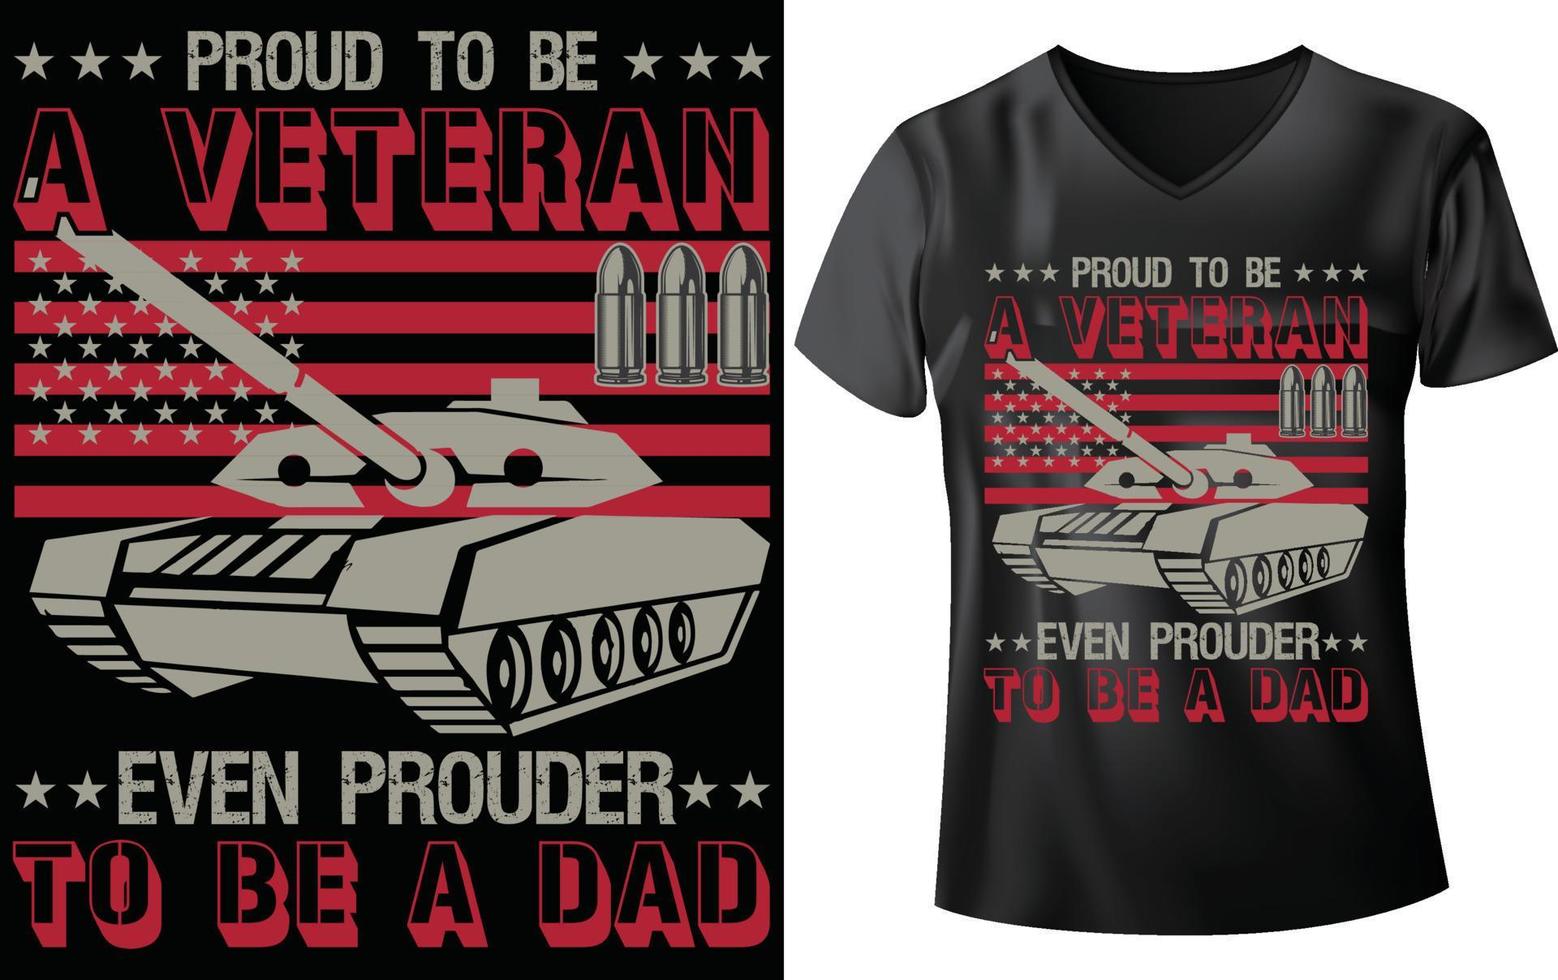 design de camiseta militar vetor